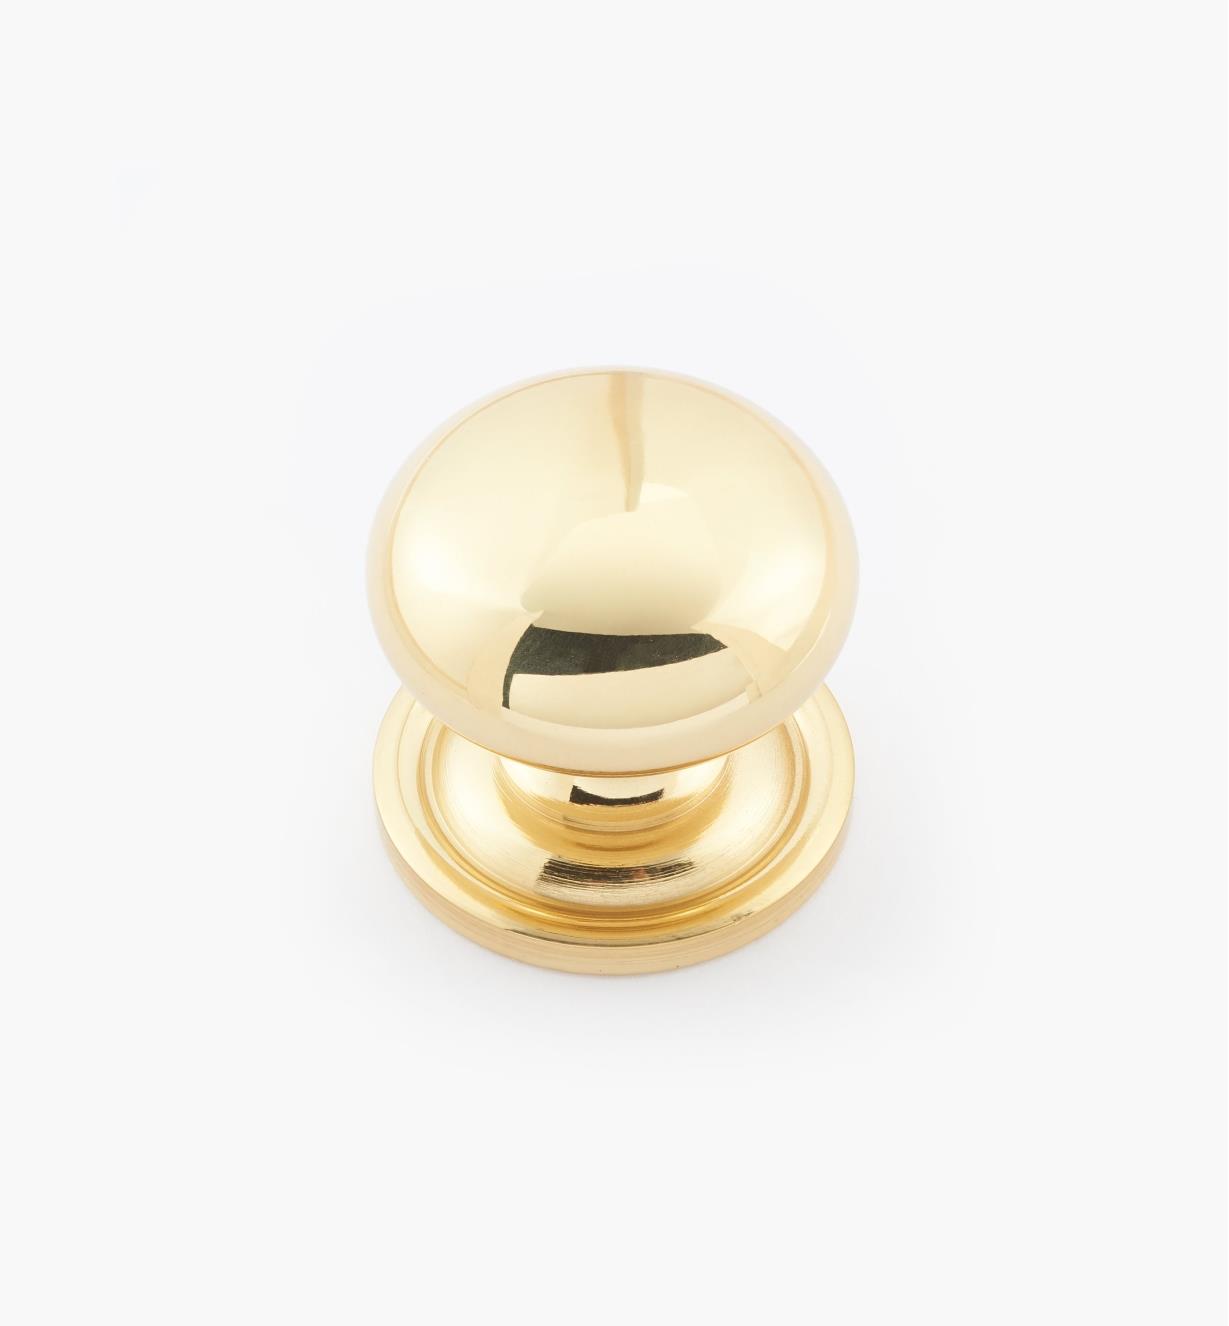 02W1404 - 1 1/4" × 1 1/8" Round Brass Knob, Polished Brass